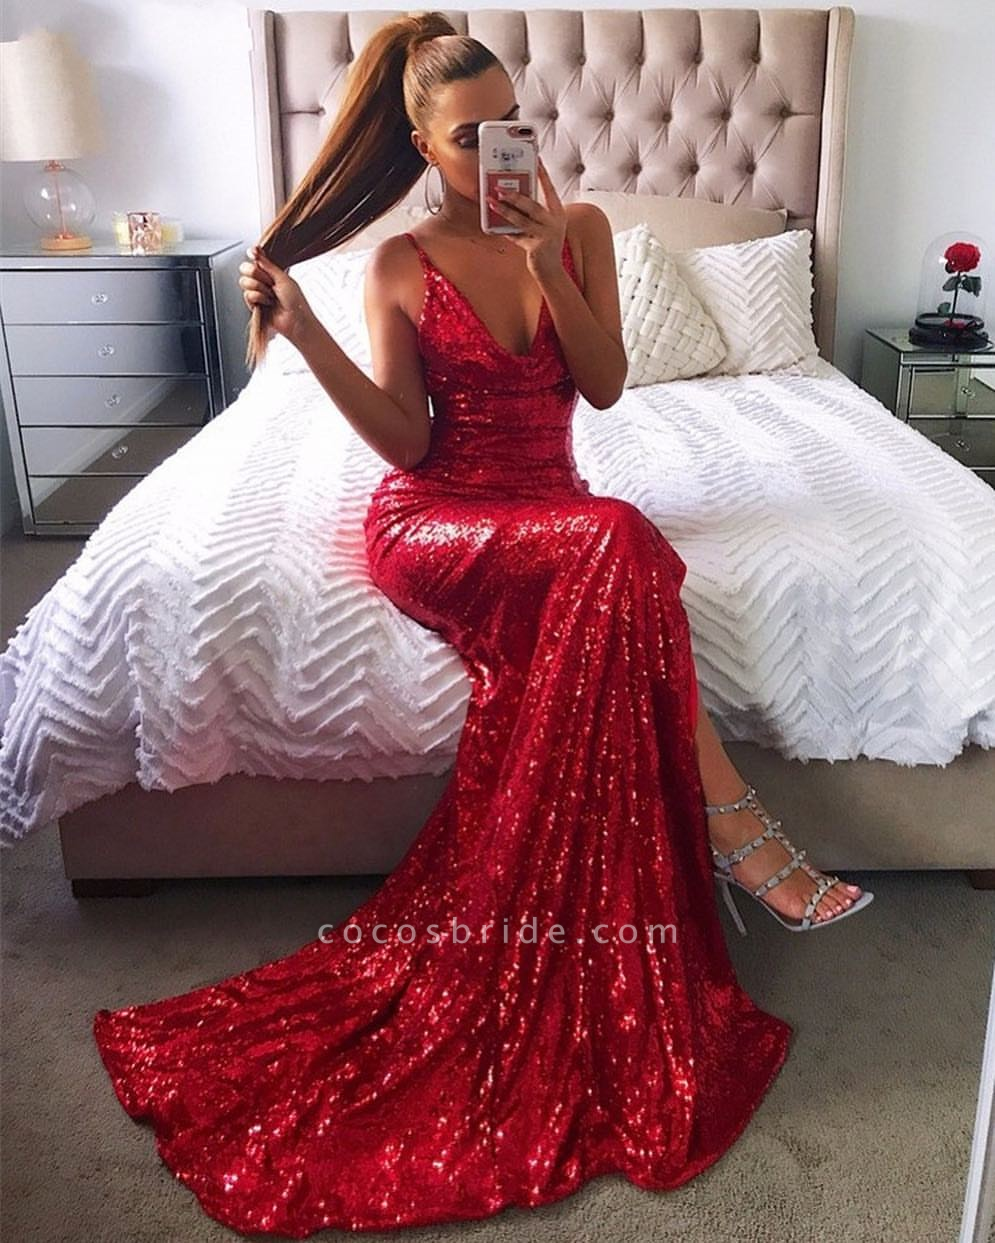 sammensværgelse lidenskabelig Megalopolis Simple Red Long Mermaid V-neck Sequin Backless Prom Dress with Slit |  Cocosbride